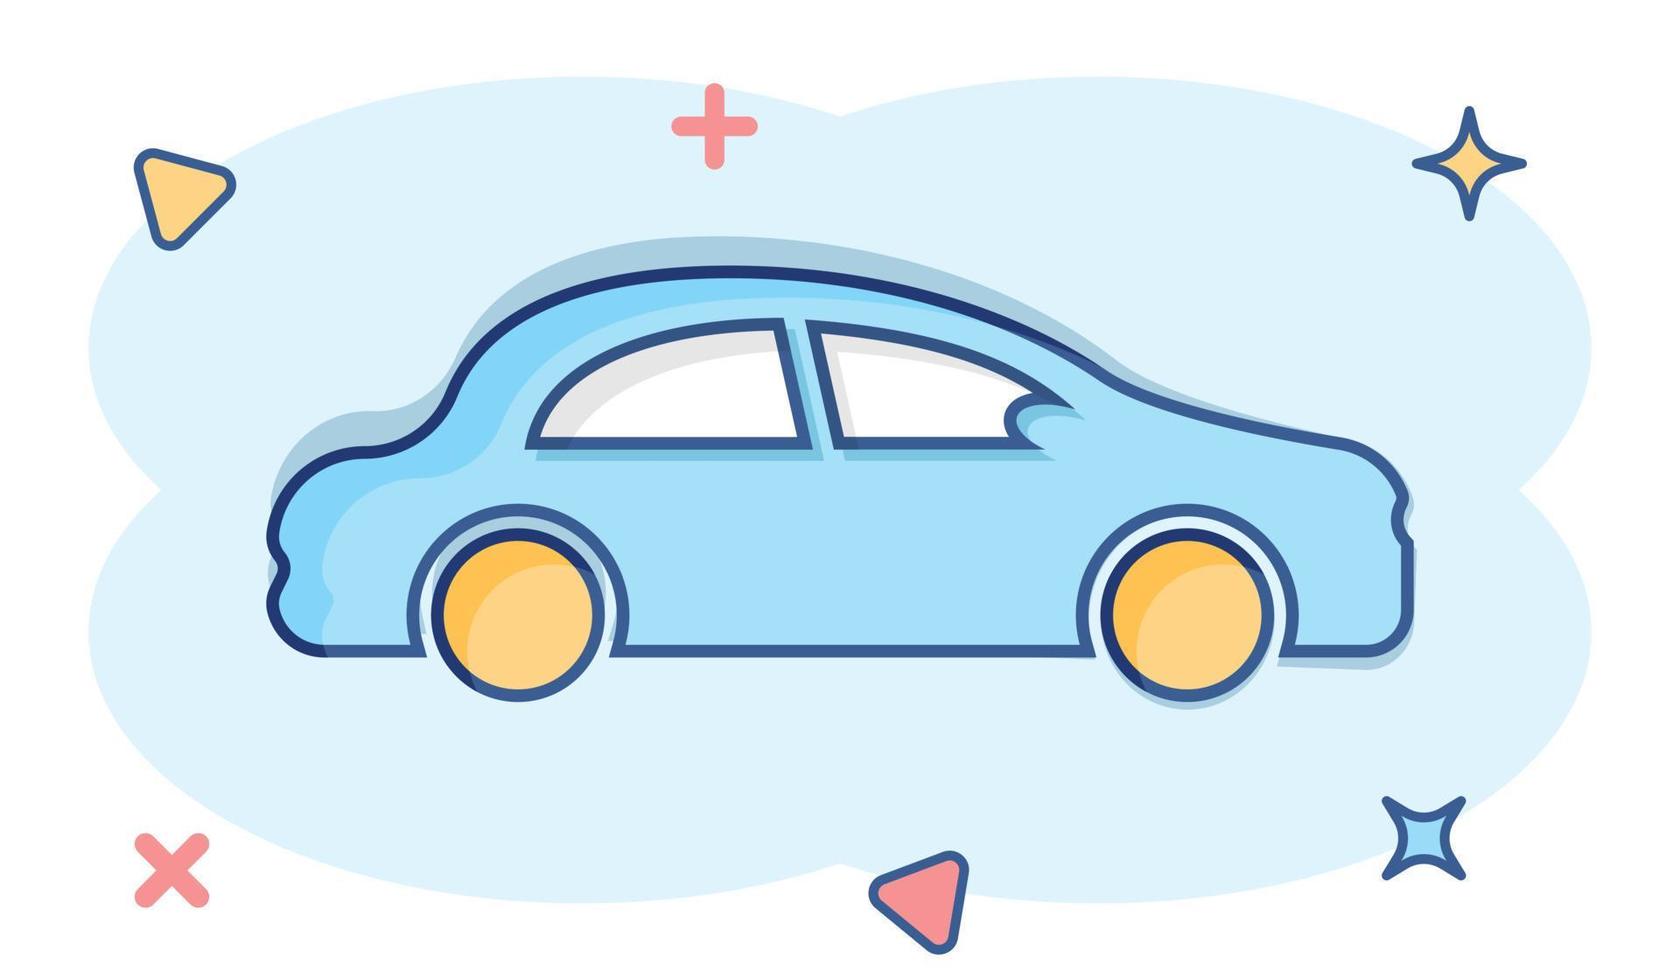 ícone do carro em estilo cômico. automóvel carro vector cartoon ilustração pictograma. efeito de respingo de conceito de negócio automático.